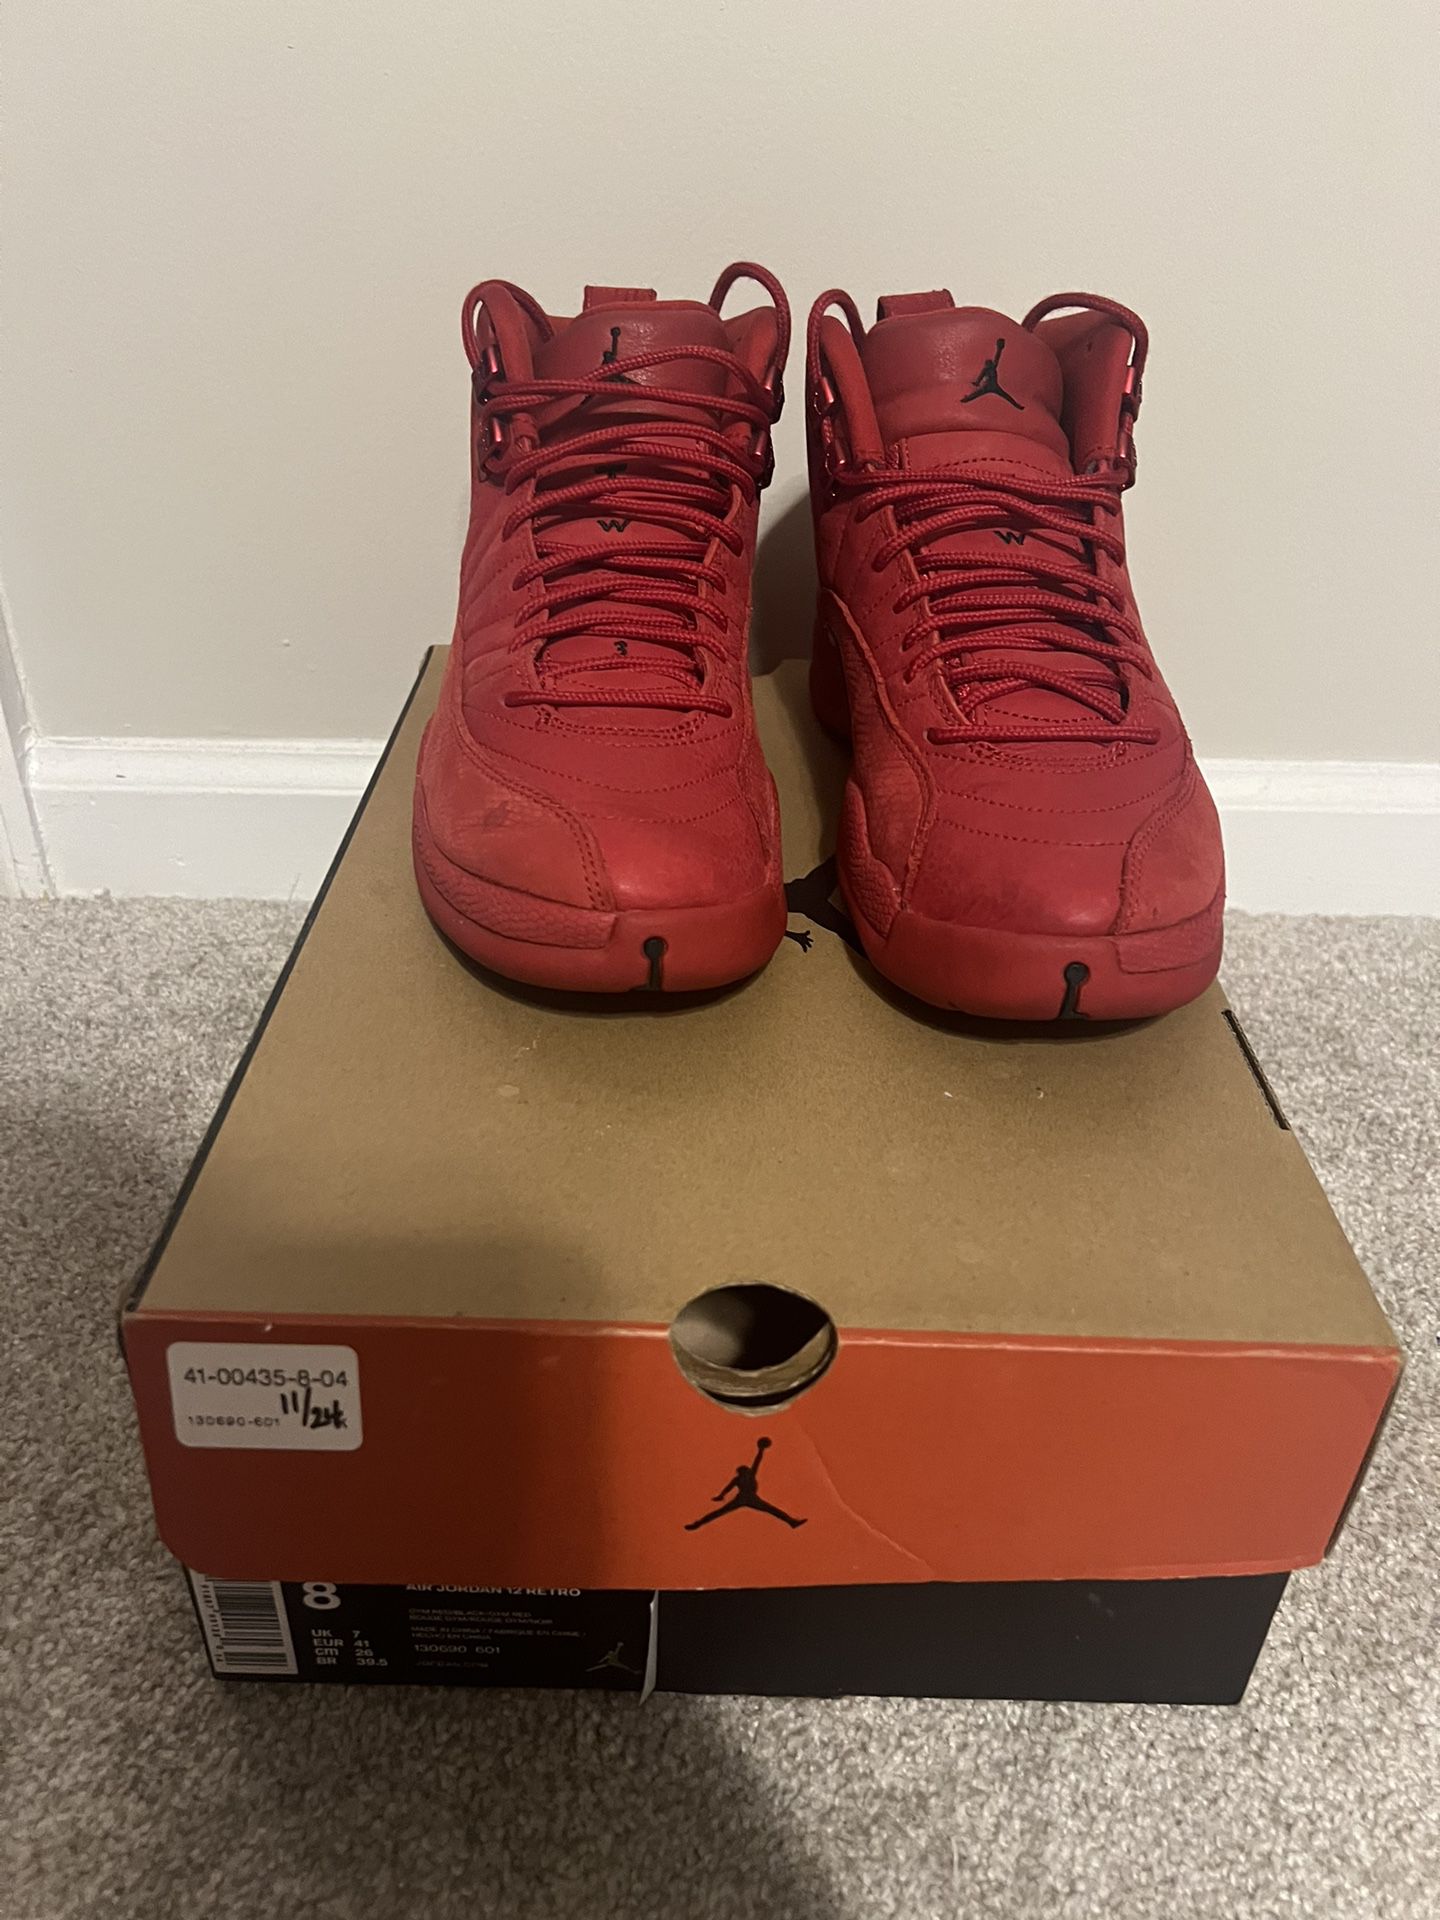 Jordan 12 Retro Gym Red (Size 8 Men)